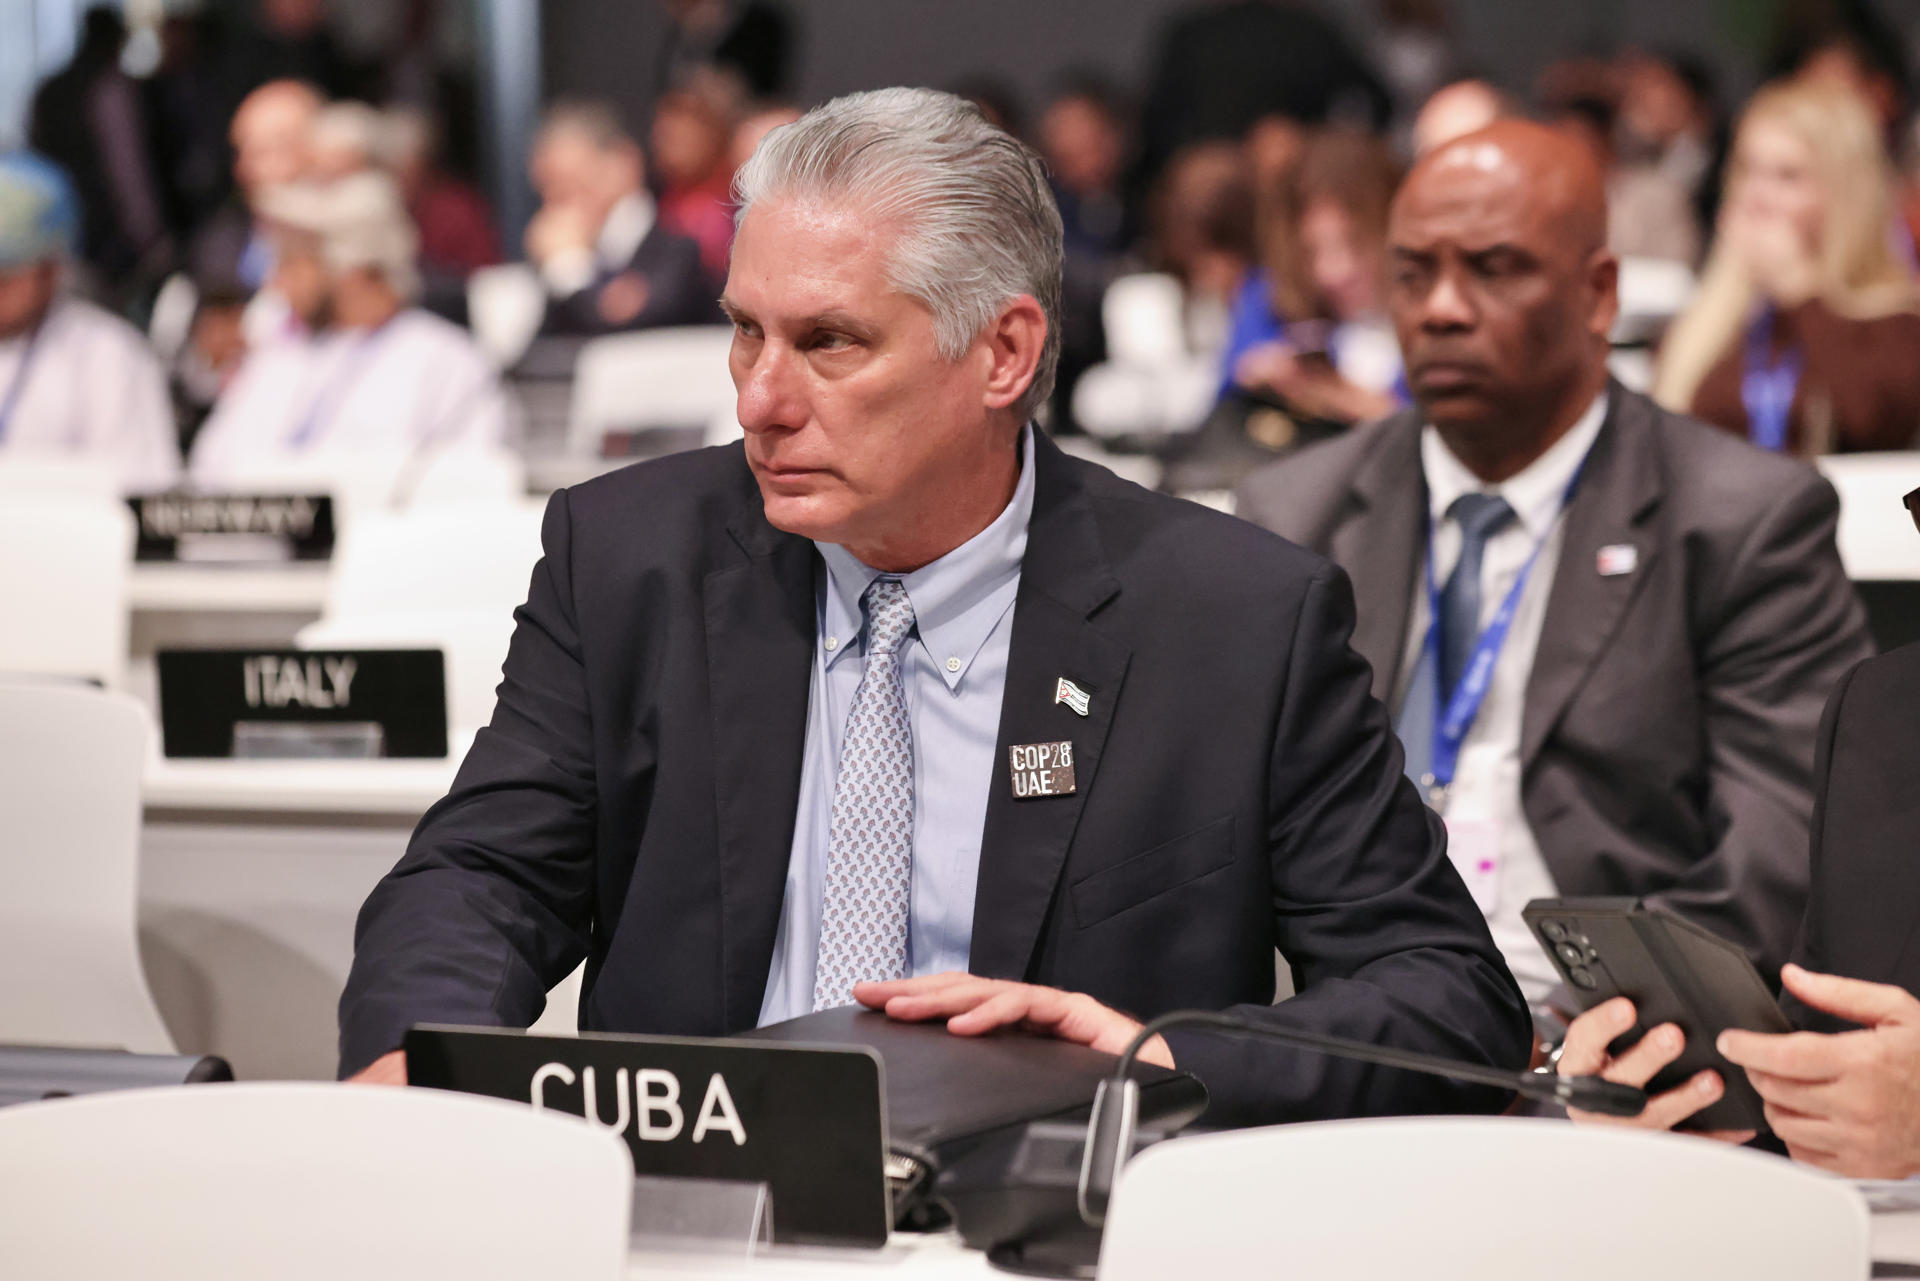 Fotografía cedida por la Presidencia de Cuba donde se observa al presidente cubano, Miguel Díaz-Canel (i) durante la COP28 en Dubái (Emiratos Árabes Unidos). EFE/ Alejandro Azcuy/Presidencia de Cuba